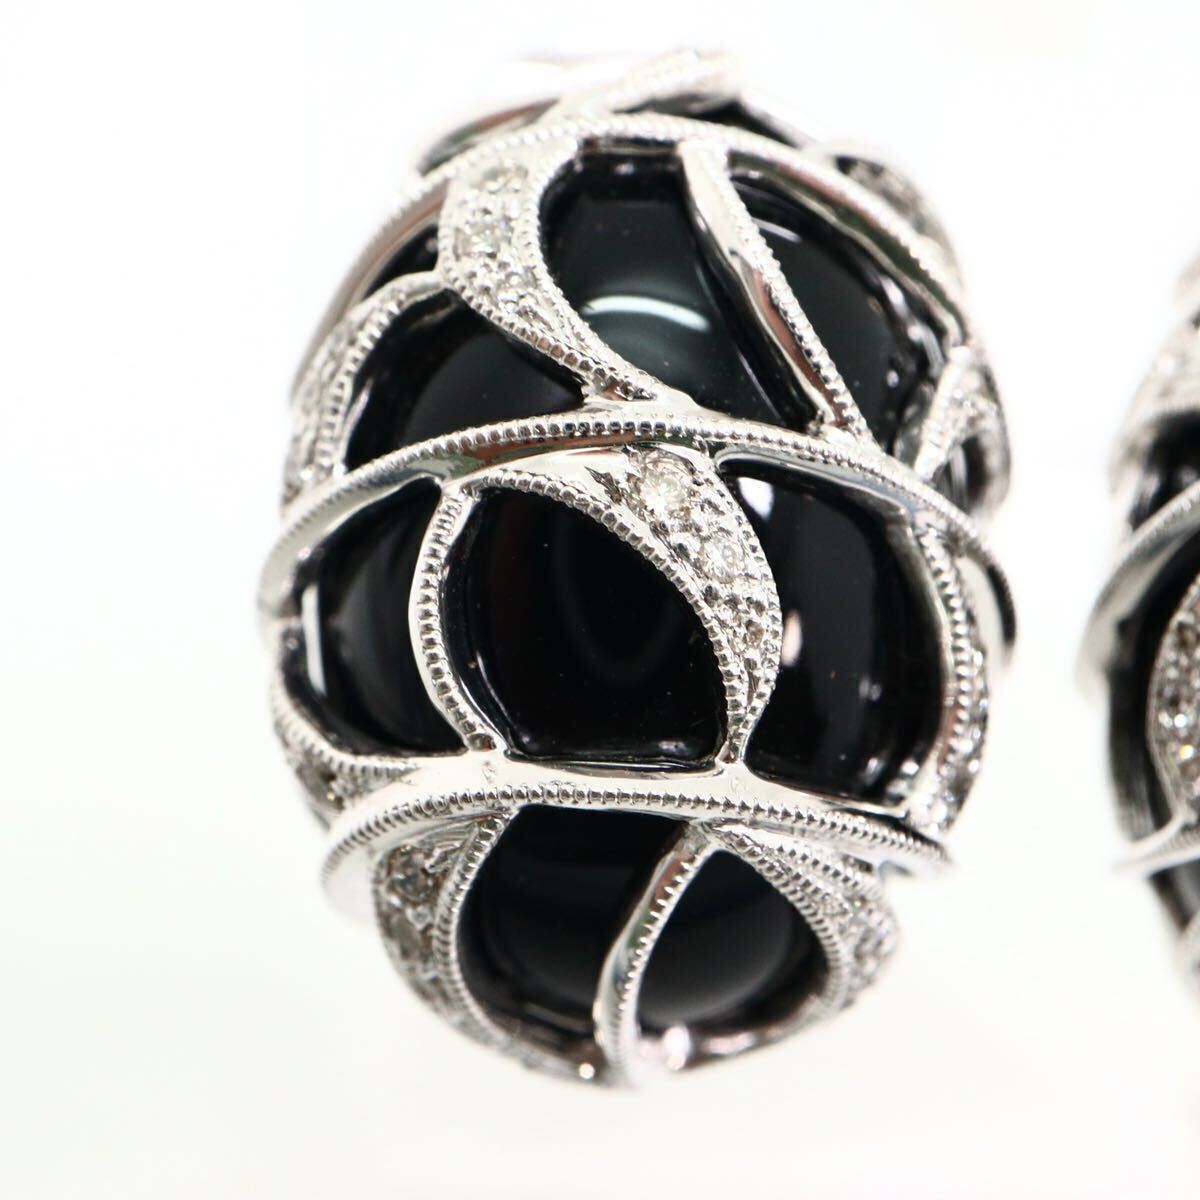 豪華!!《K18 天然オニキス/天然ダイヤモンドイヤリング兼ピアス》M 約16.2g 23.05ct onyx diamond earring jewelry ジュエリー EF8/EG3の画像4